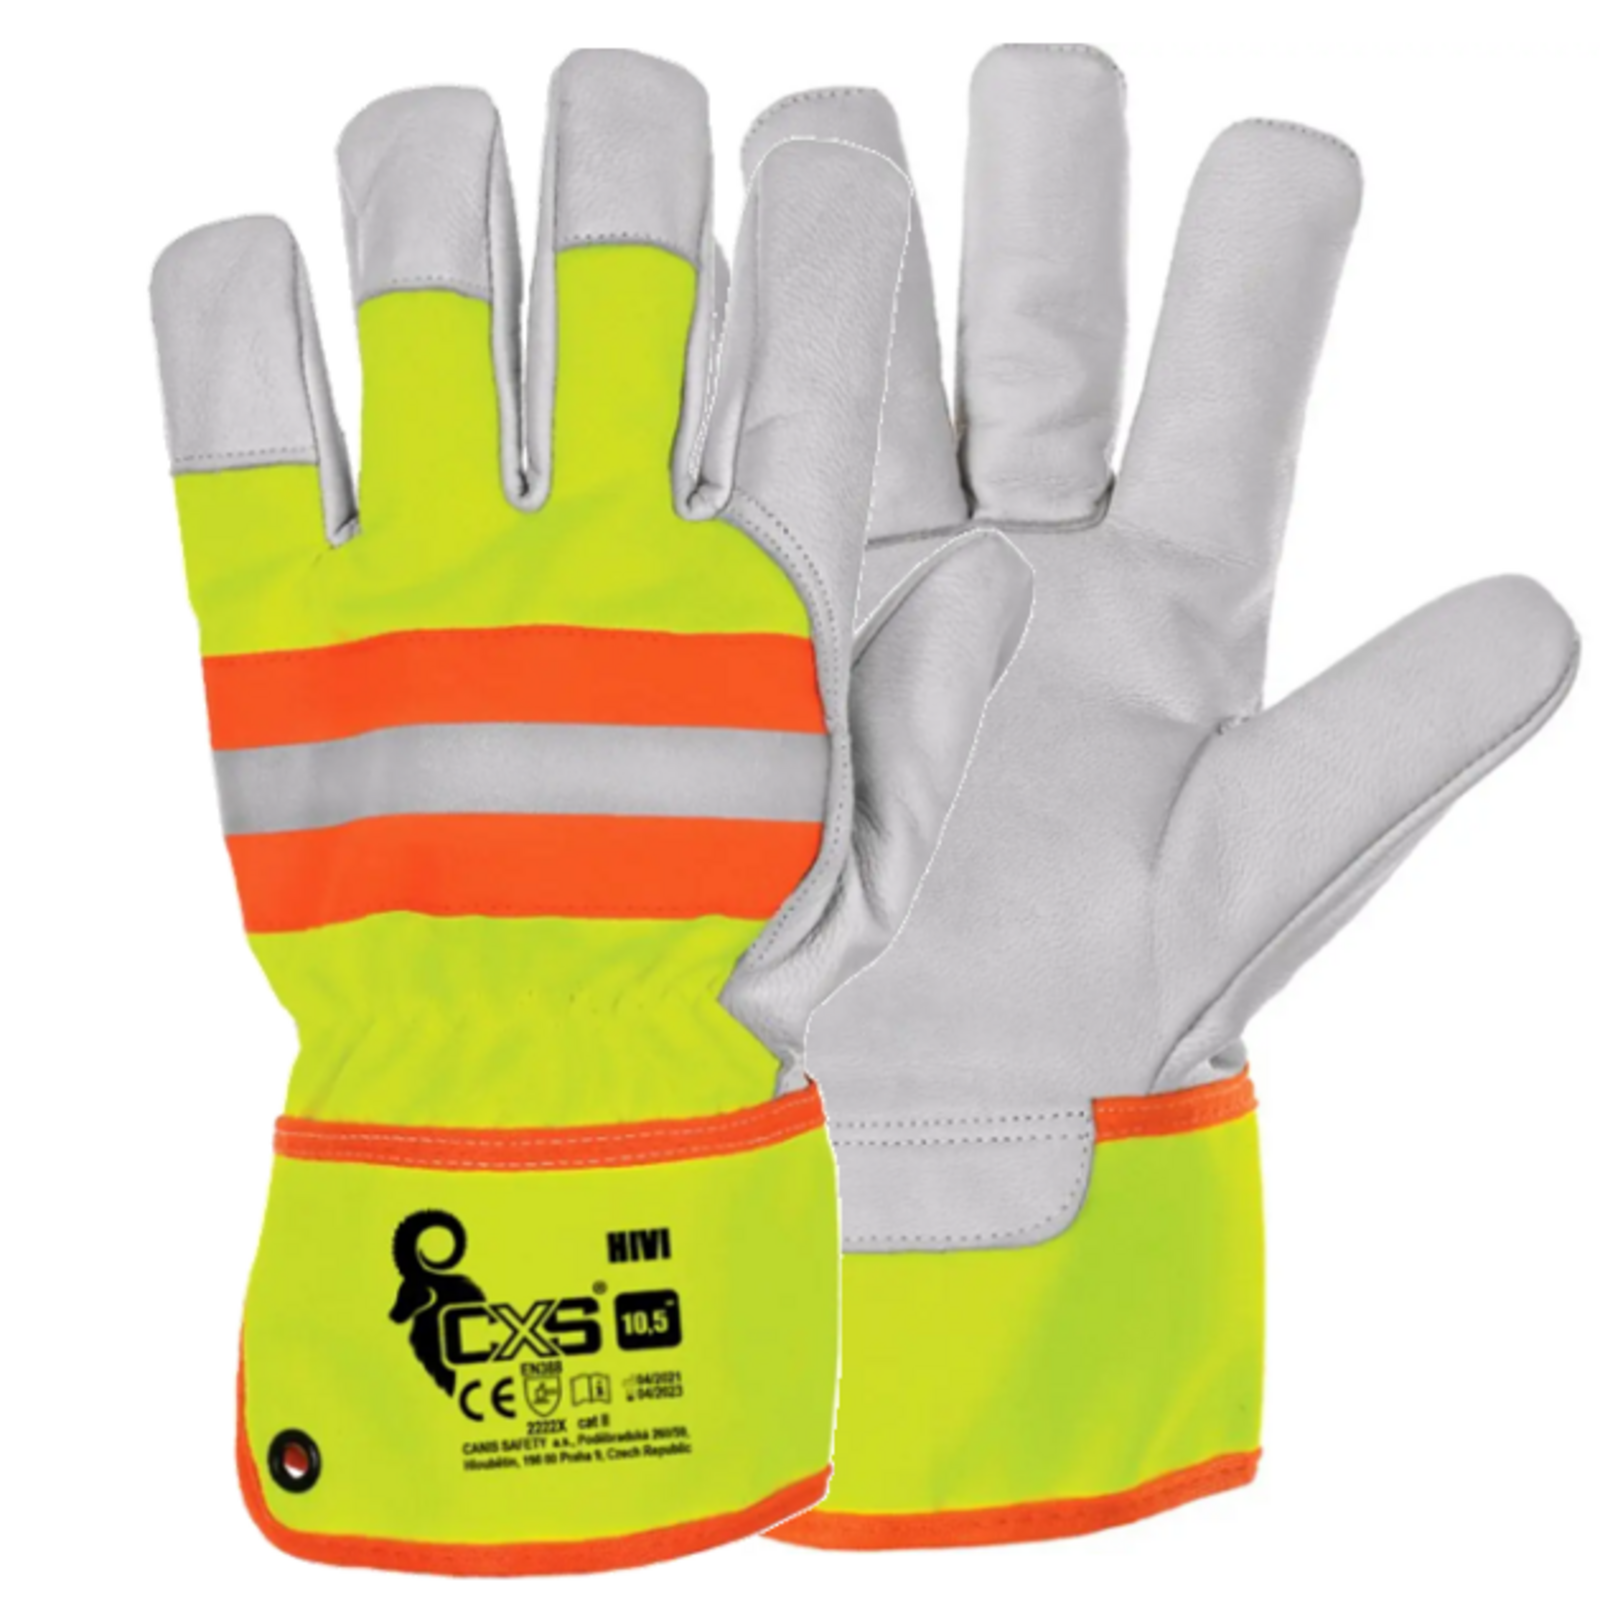 Kombinované pracovné rukavice CXS Hivi s blistrom - veľkosť: 9/L, farba: žltá/oranžová